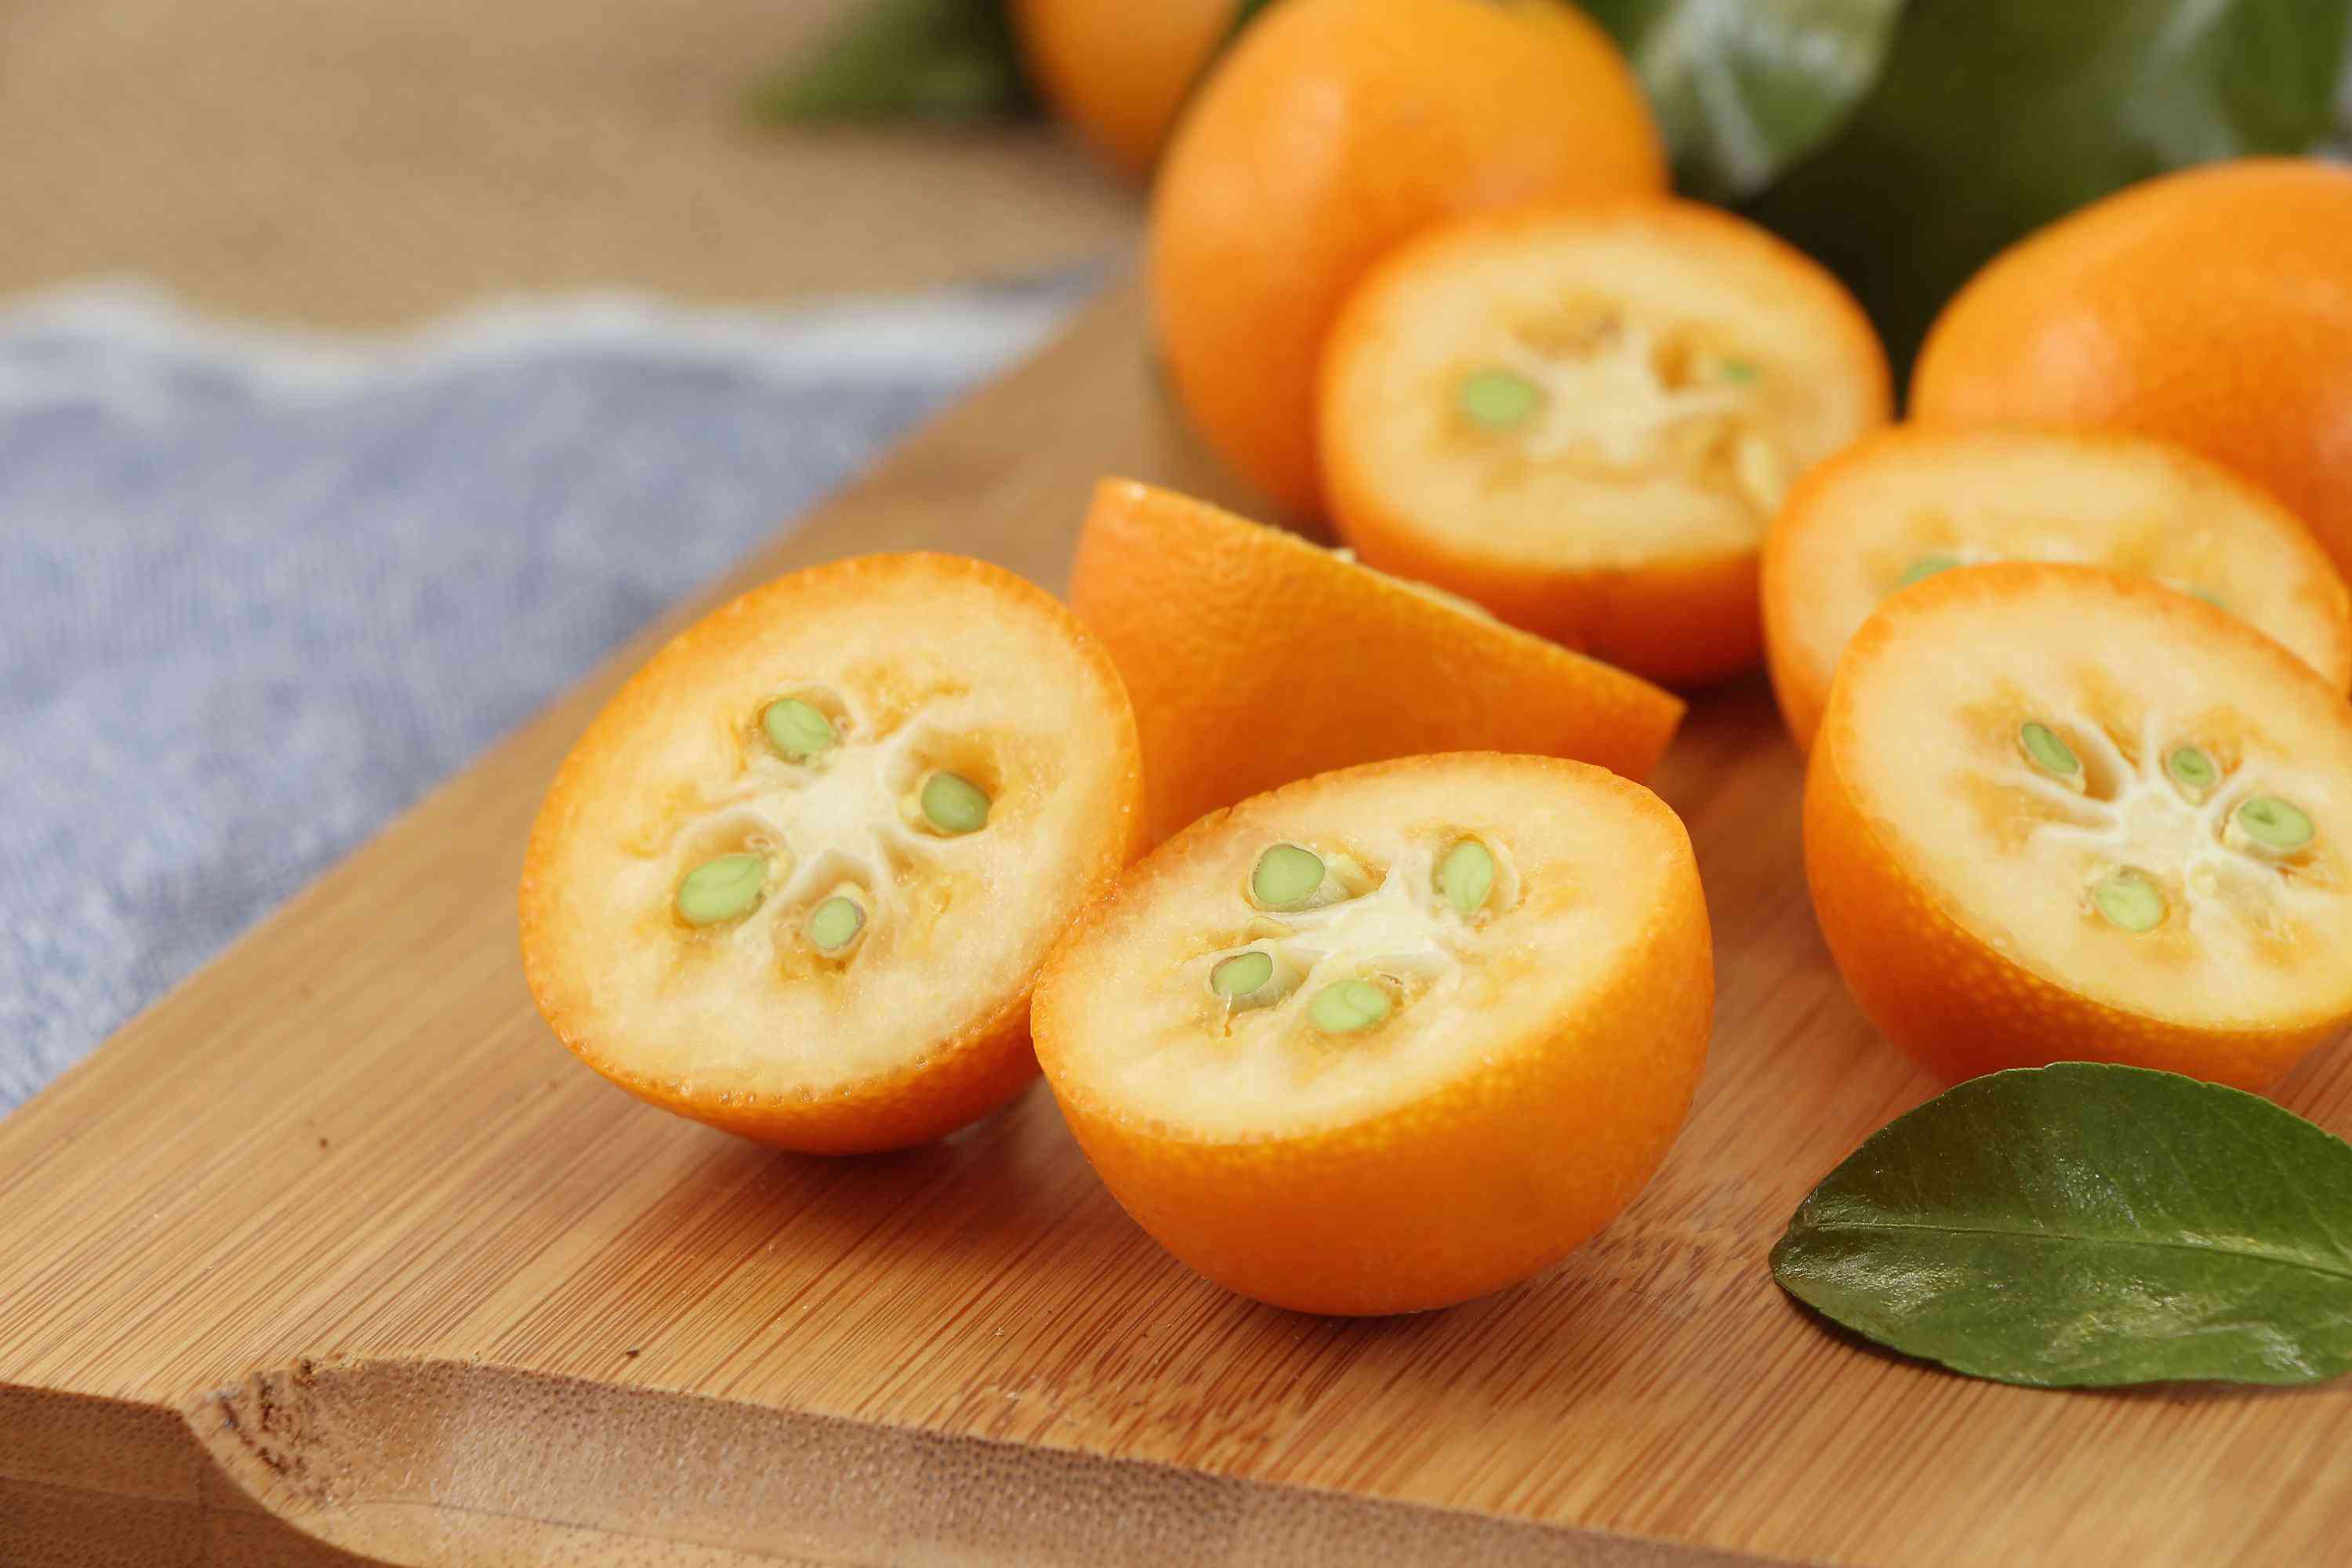 糖煮金橘对治疗咳嗽有很好的效果